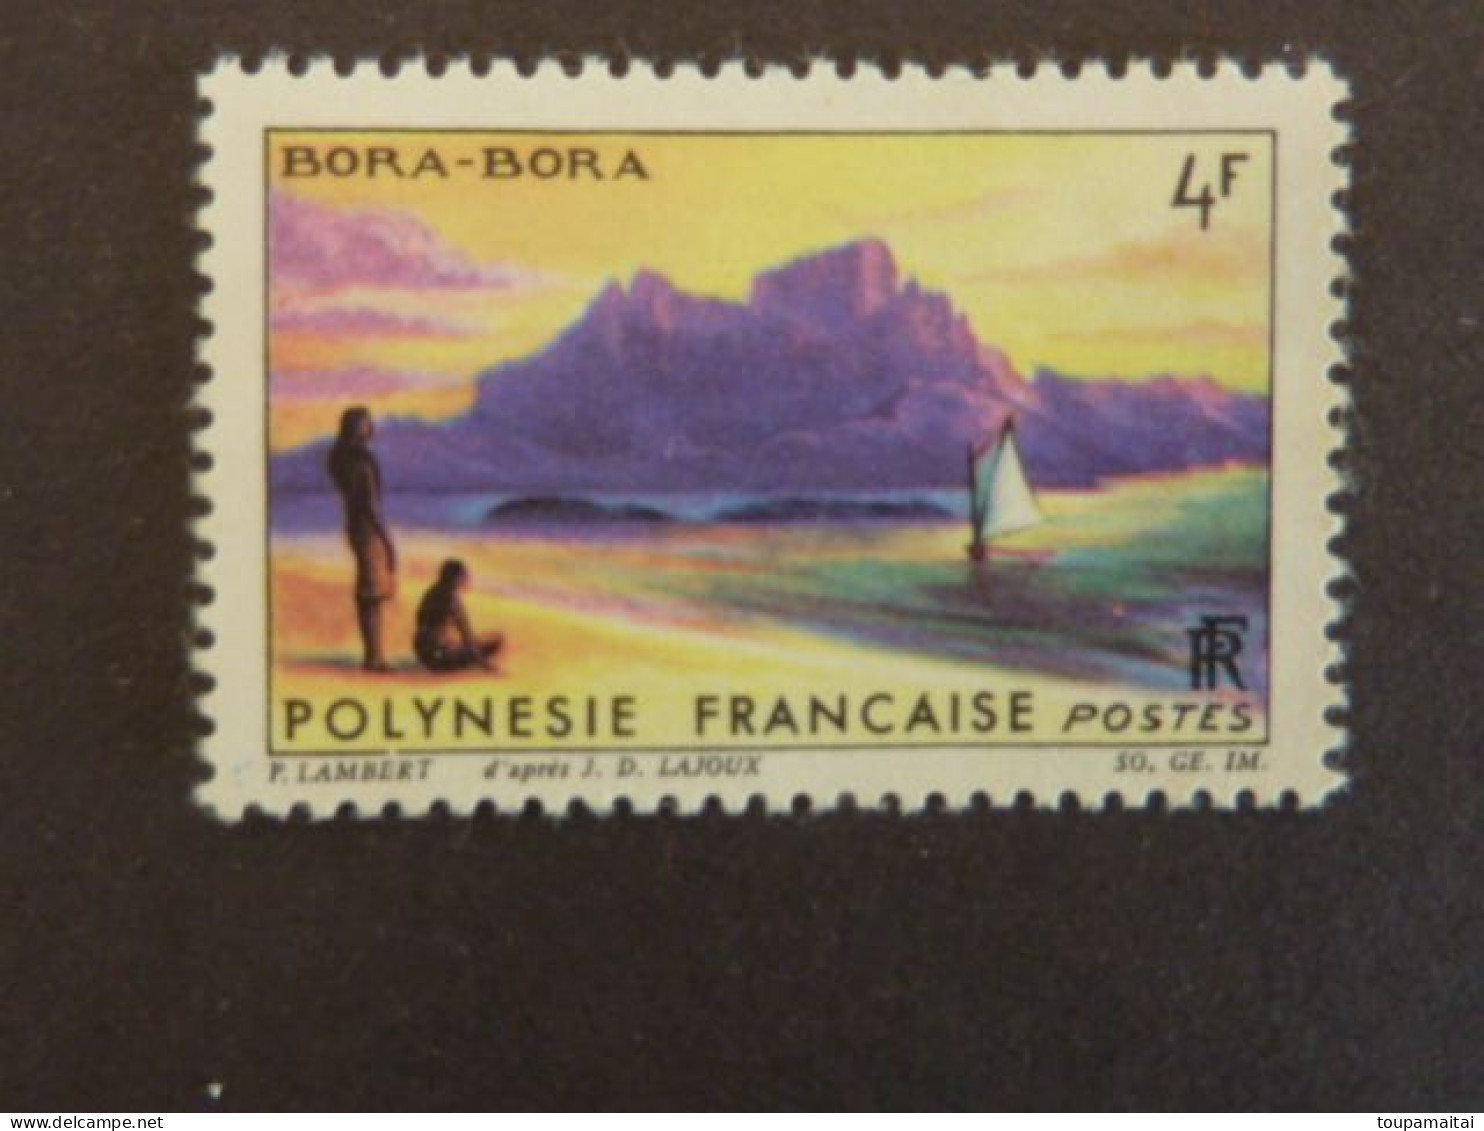 POLYNESIE FRANCAISE, Année 1964, YT N° 31 MNH** BoraBora - Neufs